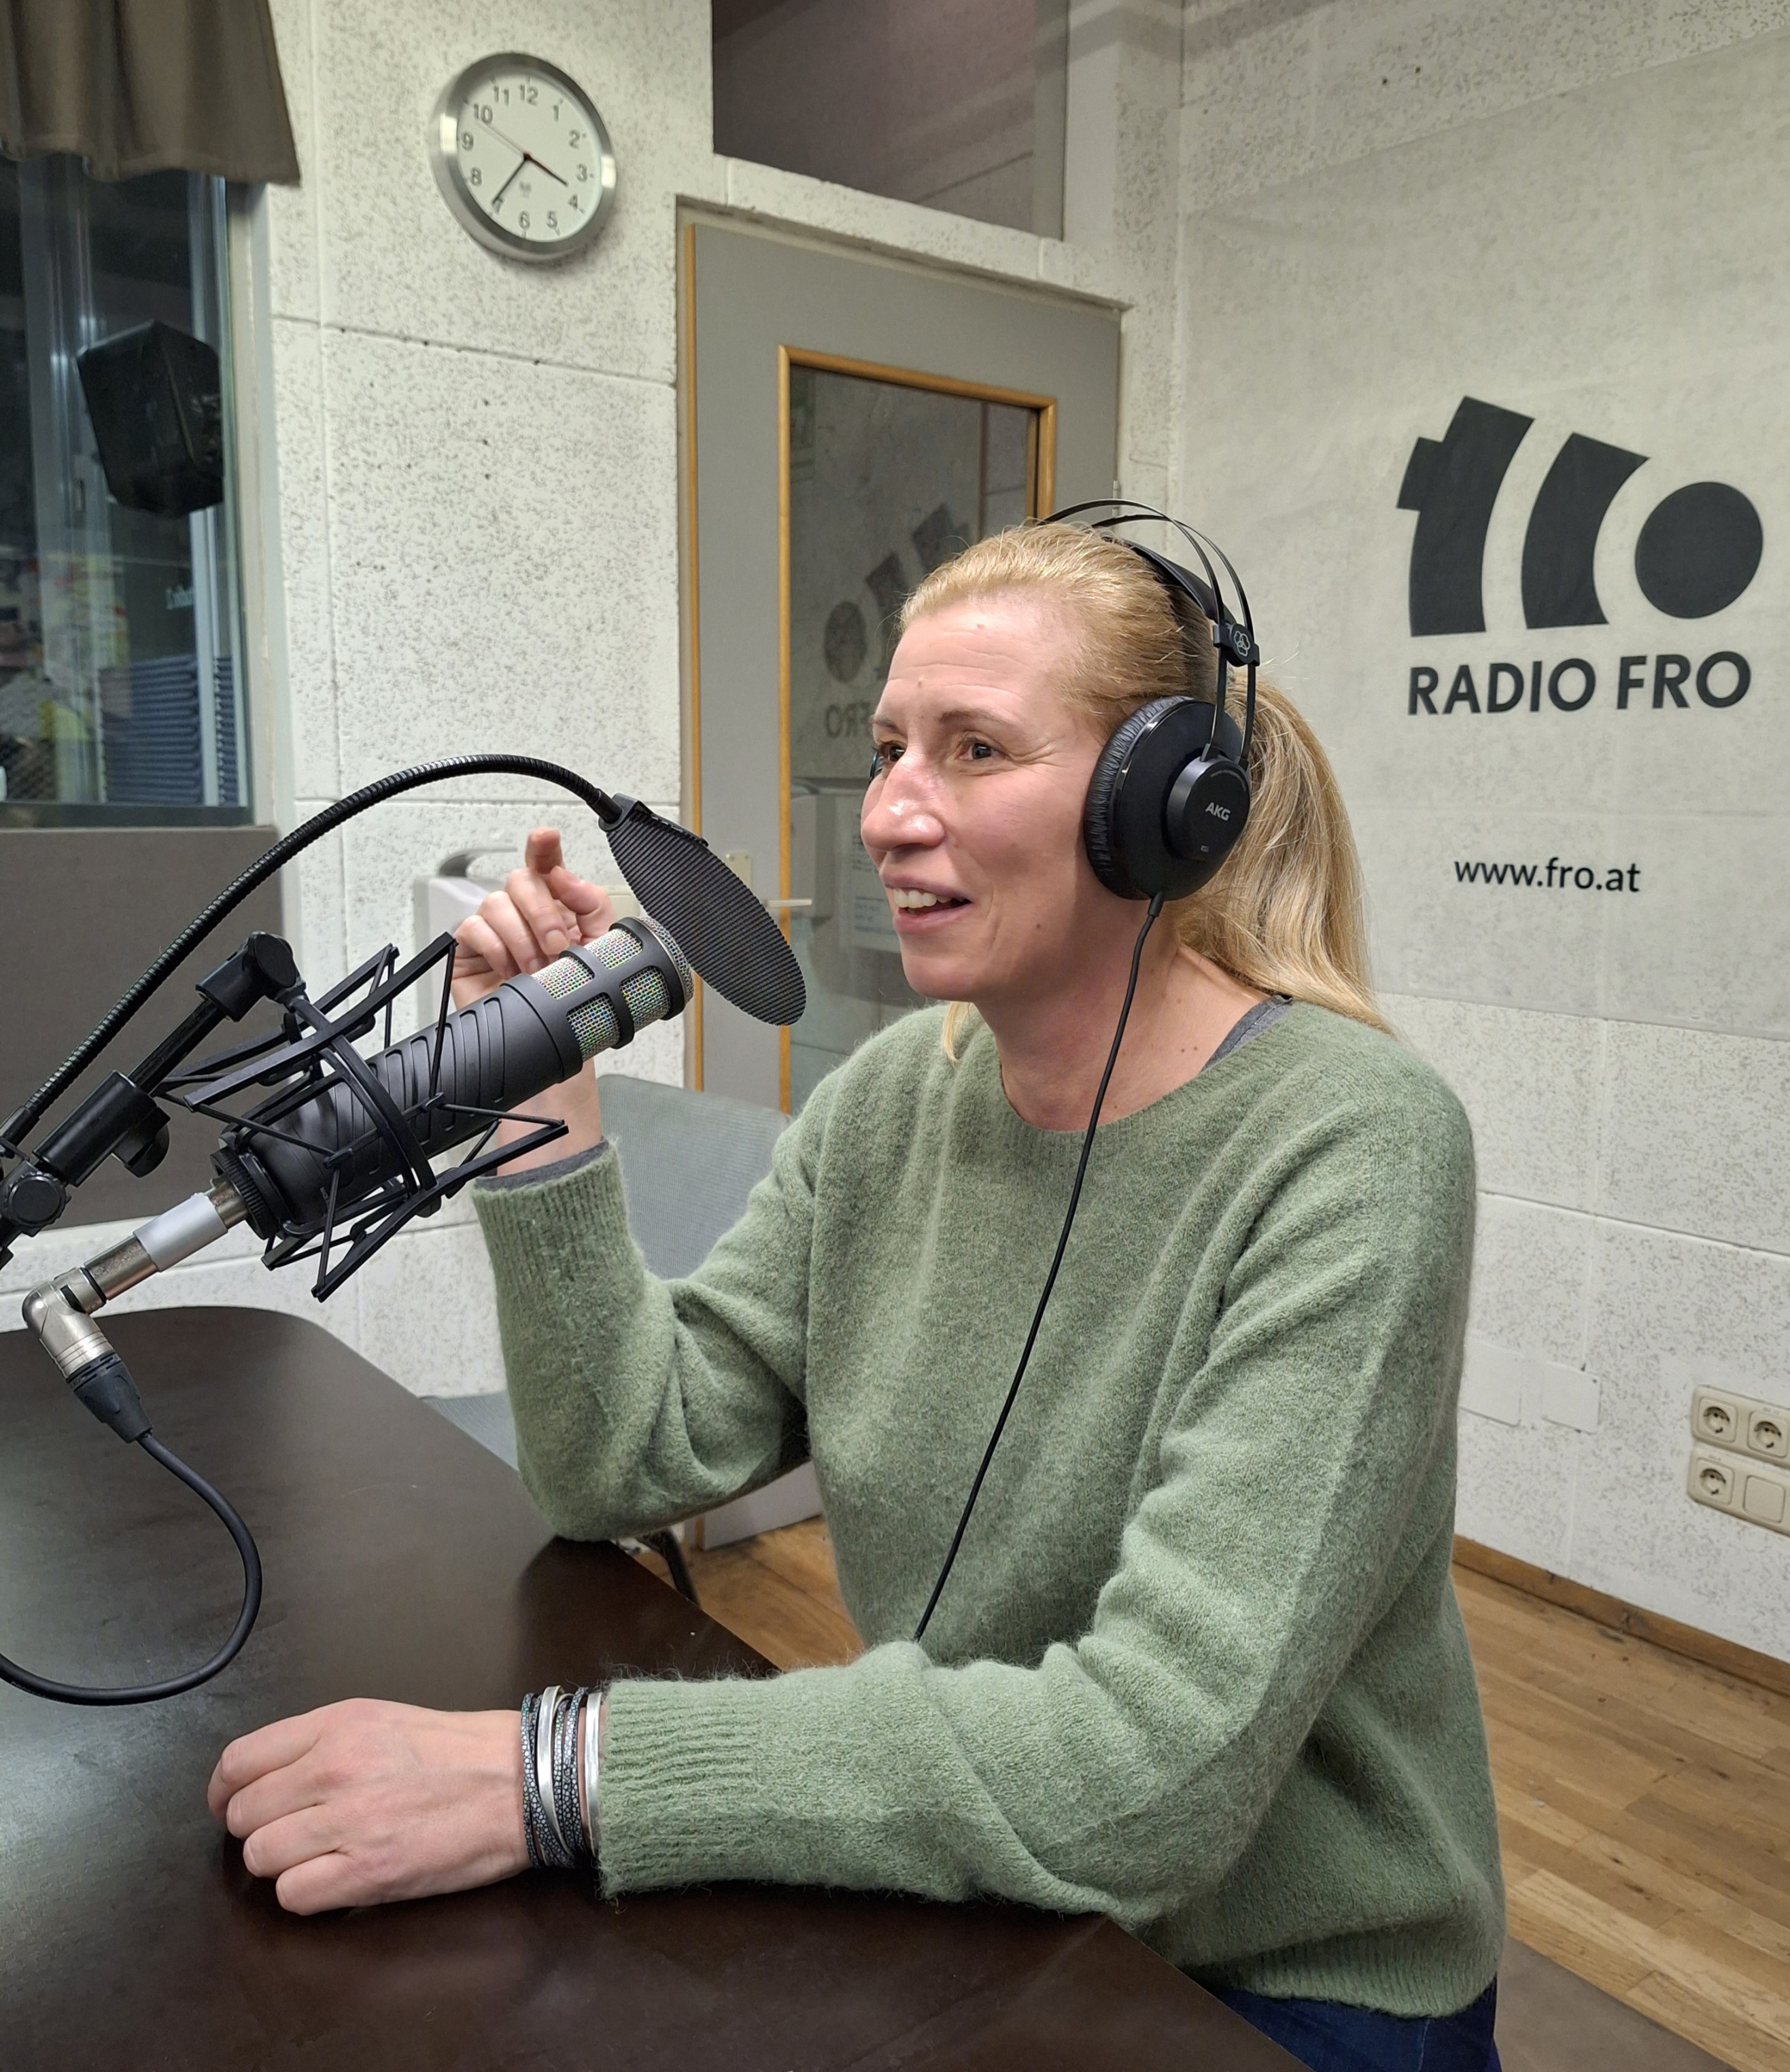 Eine Frau sitzt im Radio FRO Studio. Sie hat Kopfhörer auf und spricht in ein Mikrofon, was vor ihrem Mund steht.